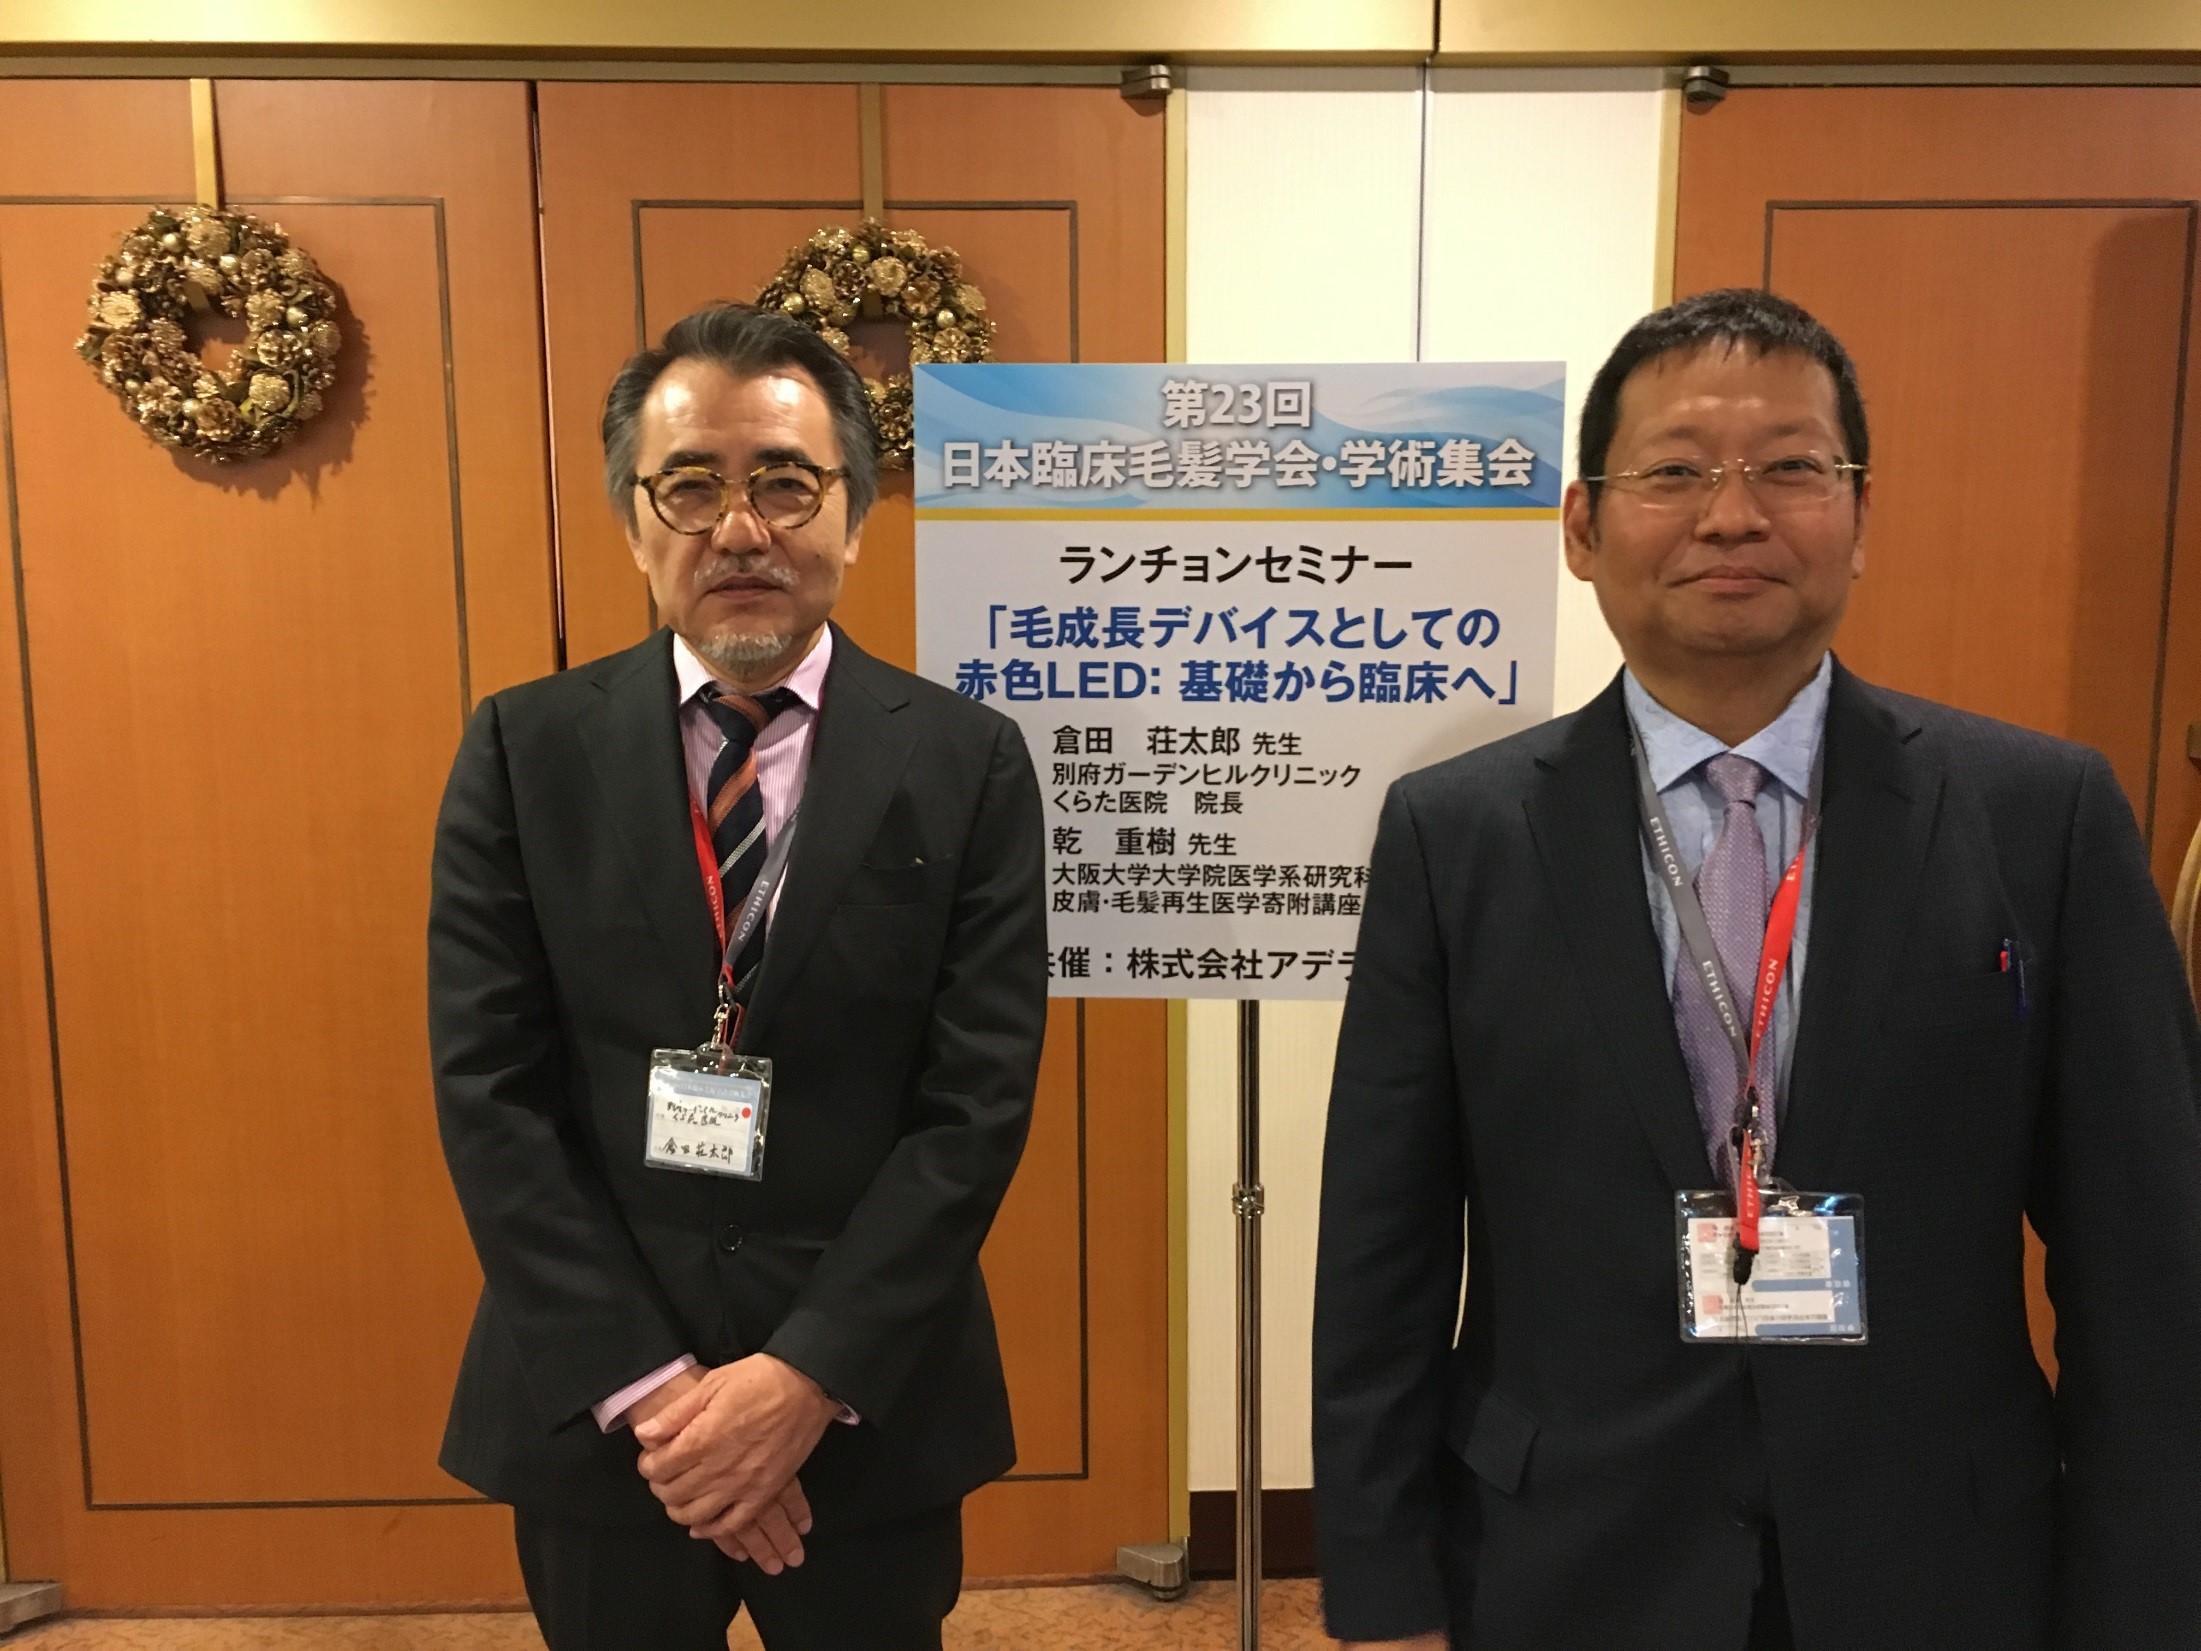 第23回日本臨床毛髪学会学術集会においてアデランスがランチョンセミナーと市民向けスポンサードセミナーを共催 株式会社アデランスのプレスリリース